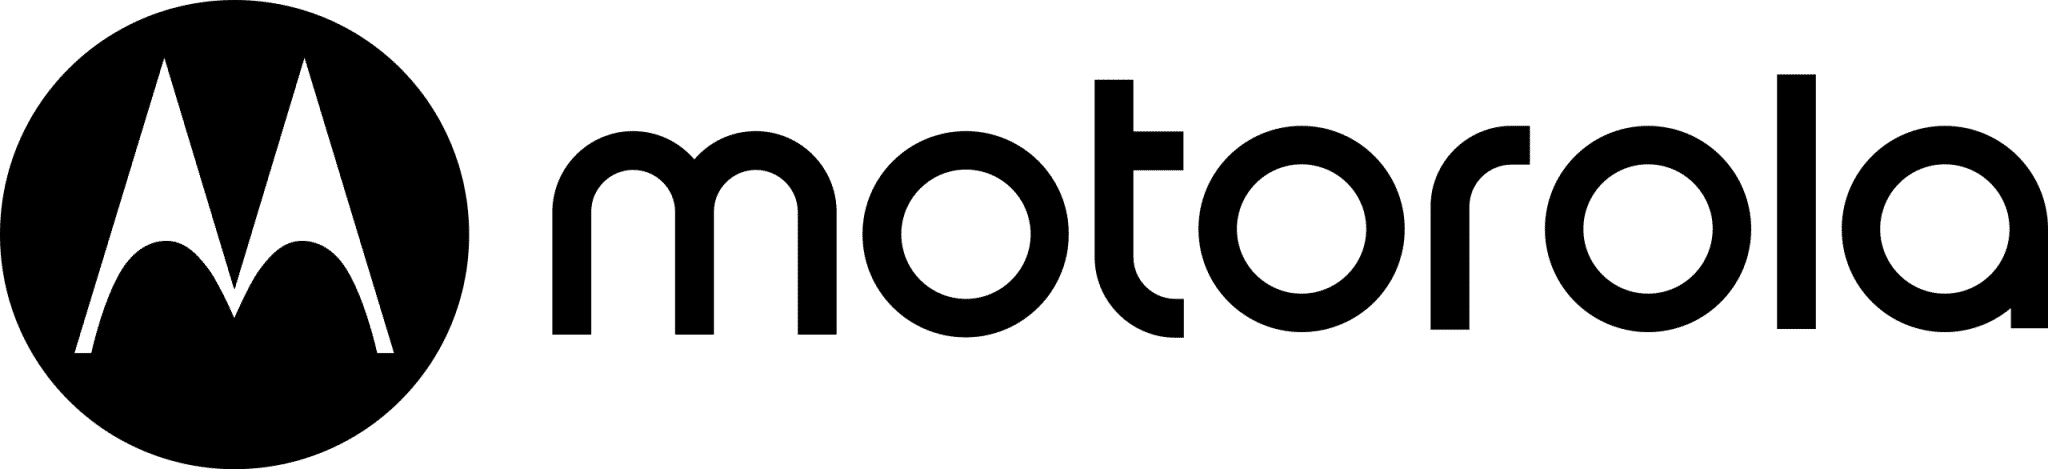 Motorola_new_logo.svg